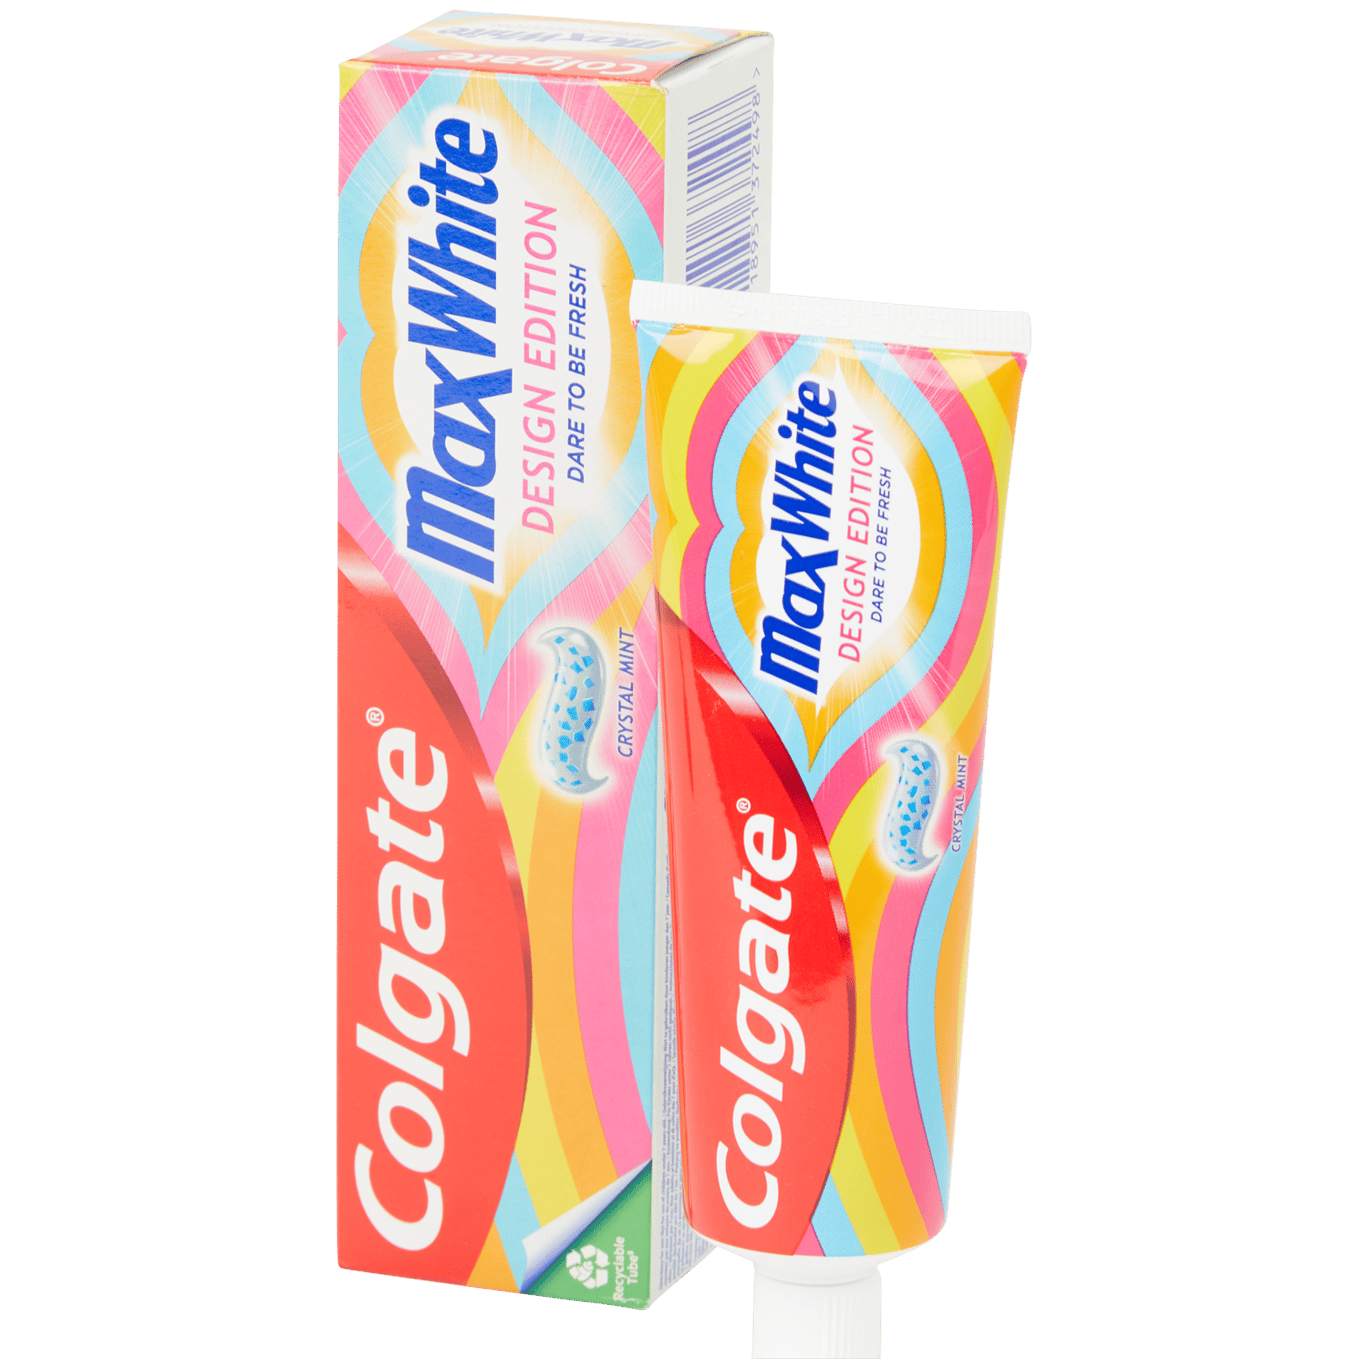 Pasta de dentes Colgate MaxWhite Max White Limited Edition